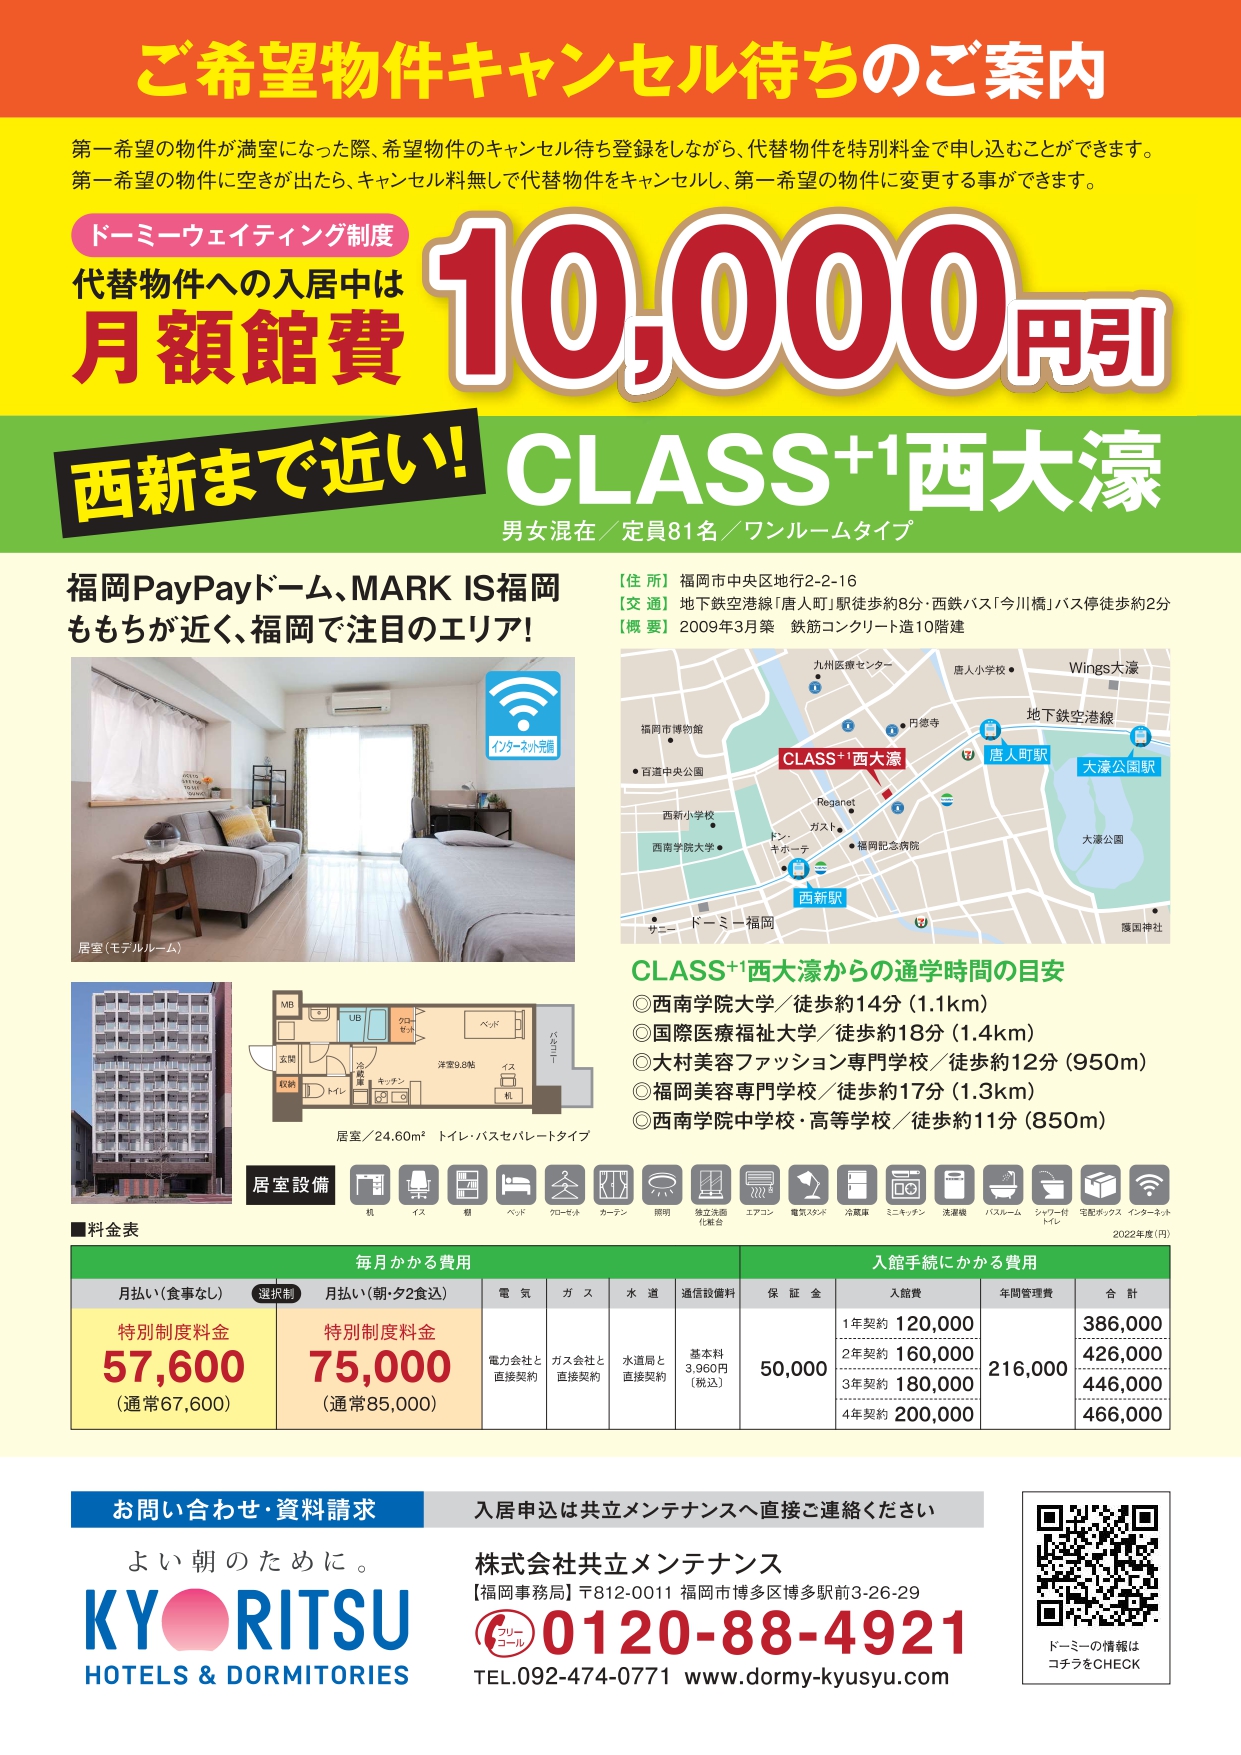 CLASS+1西大濠(1万円引き)_page-0001